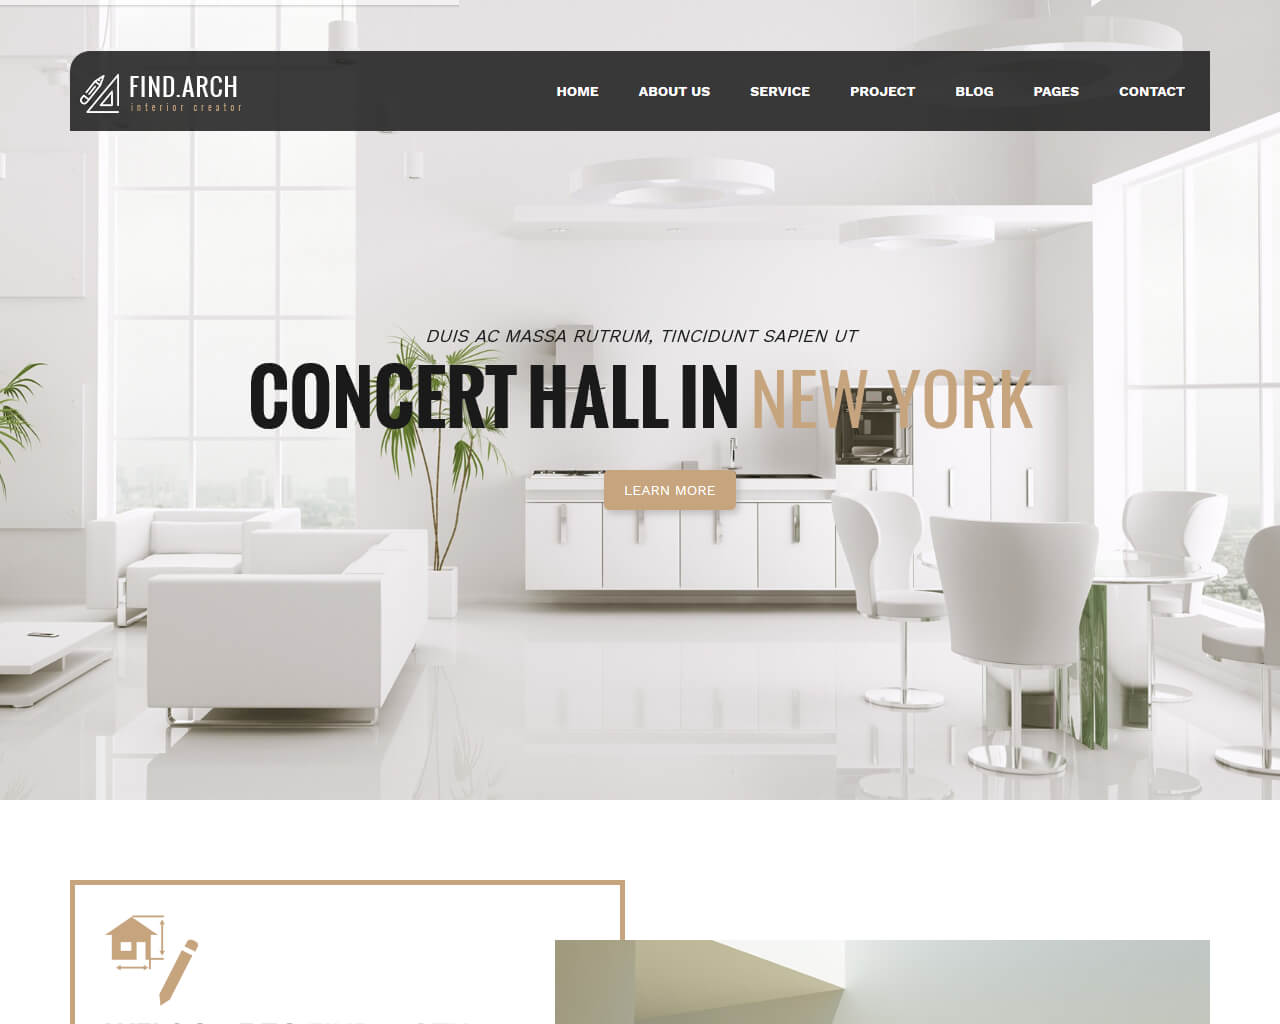 Interior Designer Website Templates